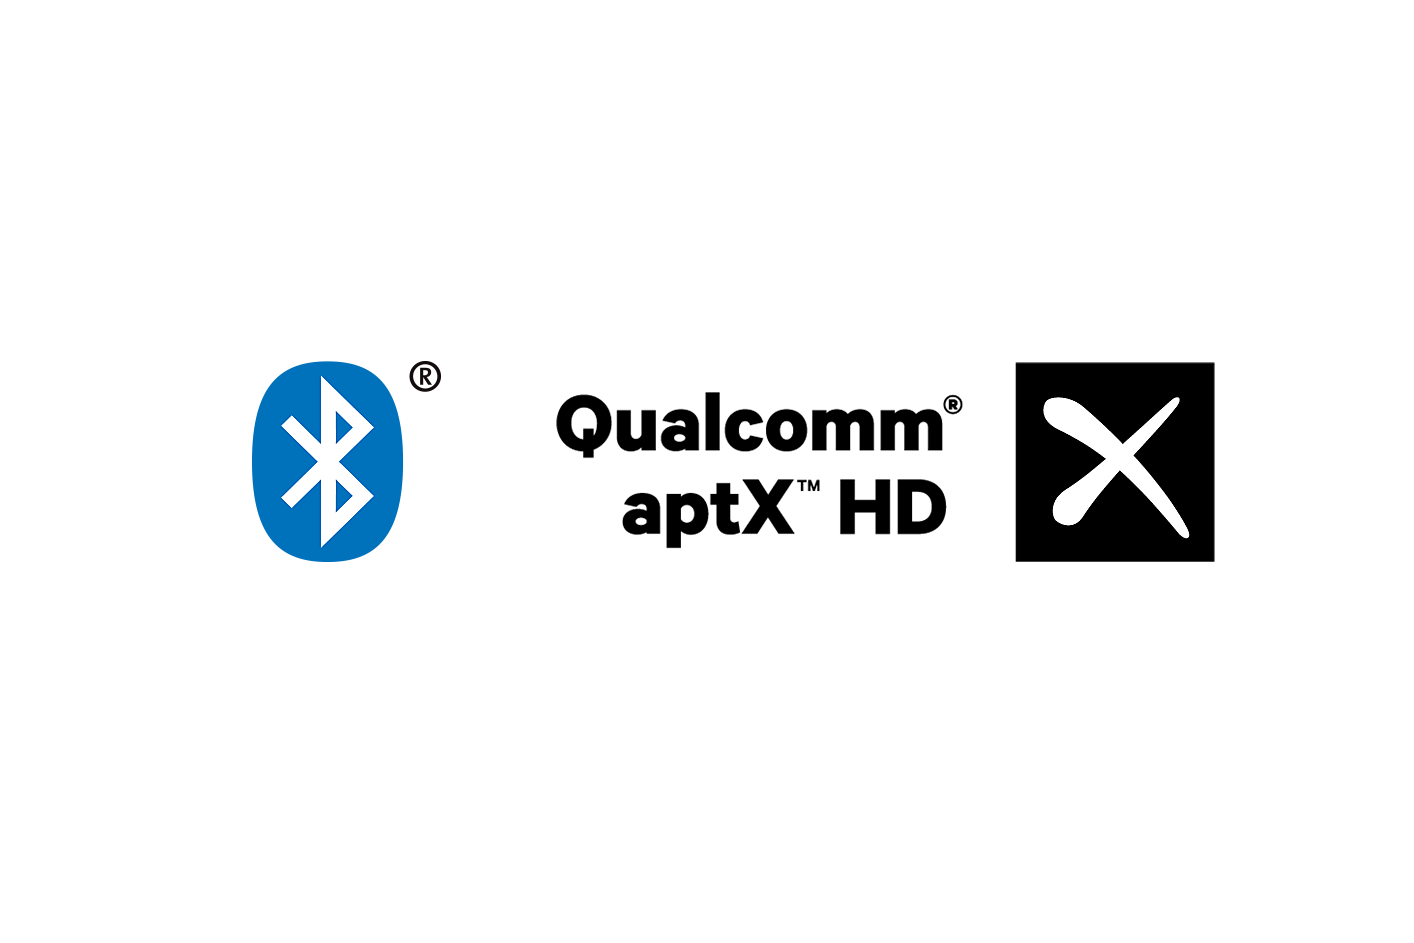 صورة لشعاري Bluetooth وaptX HD.